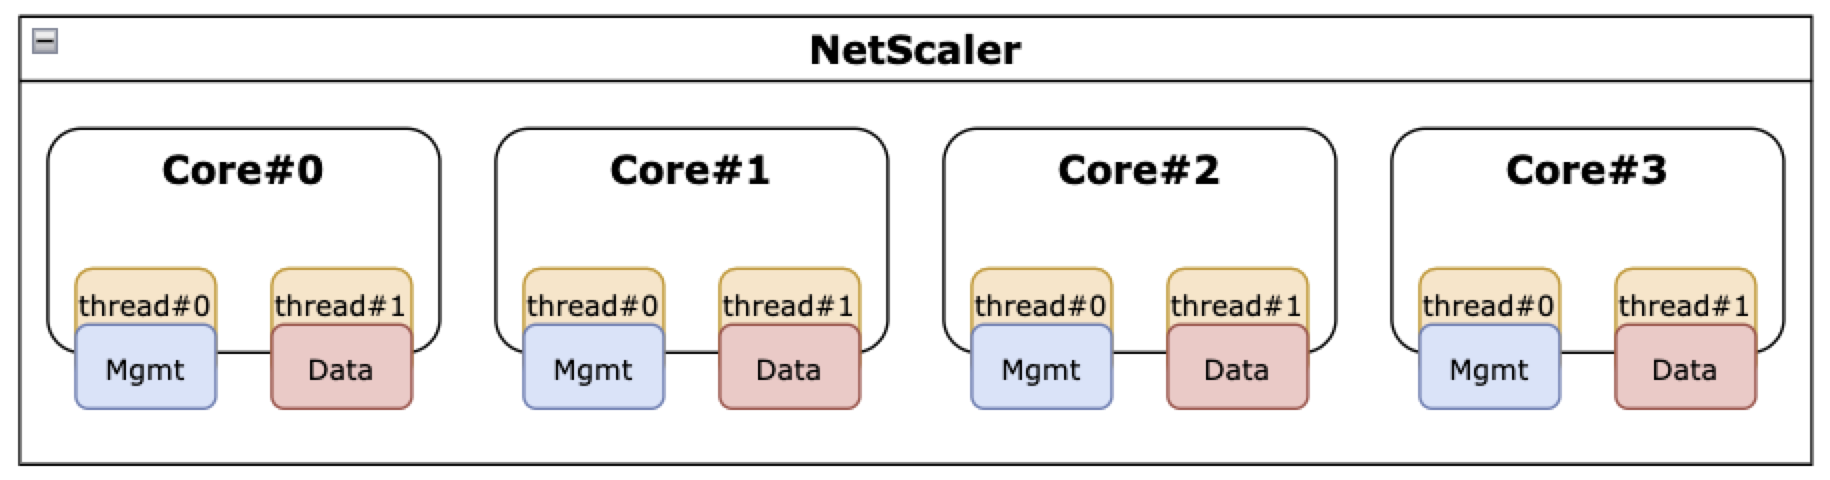 启用了 SMT 功能的 NetScaler